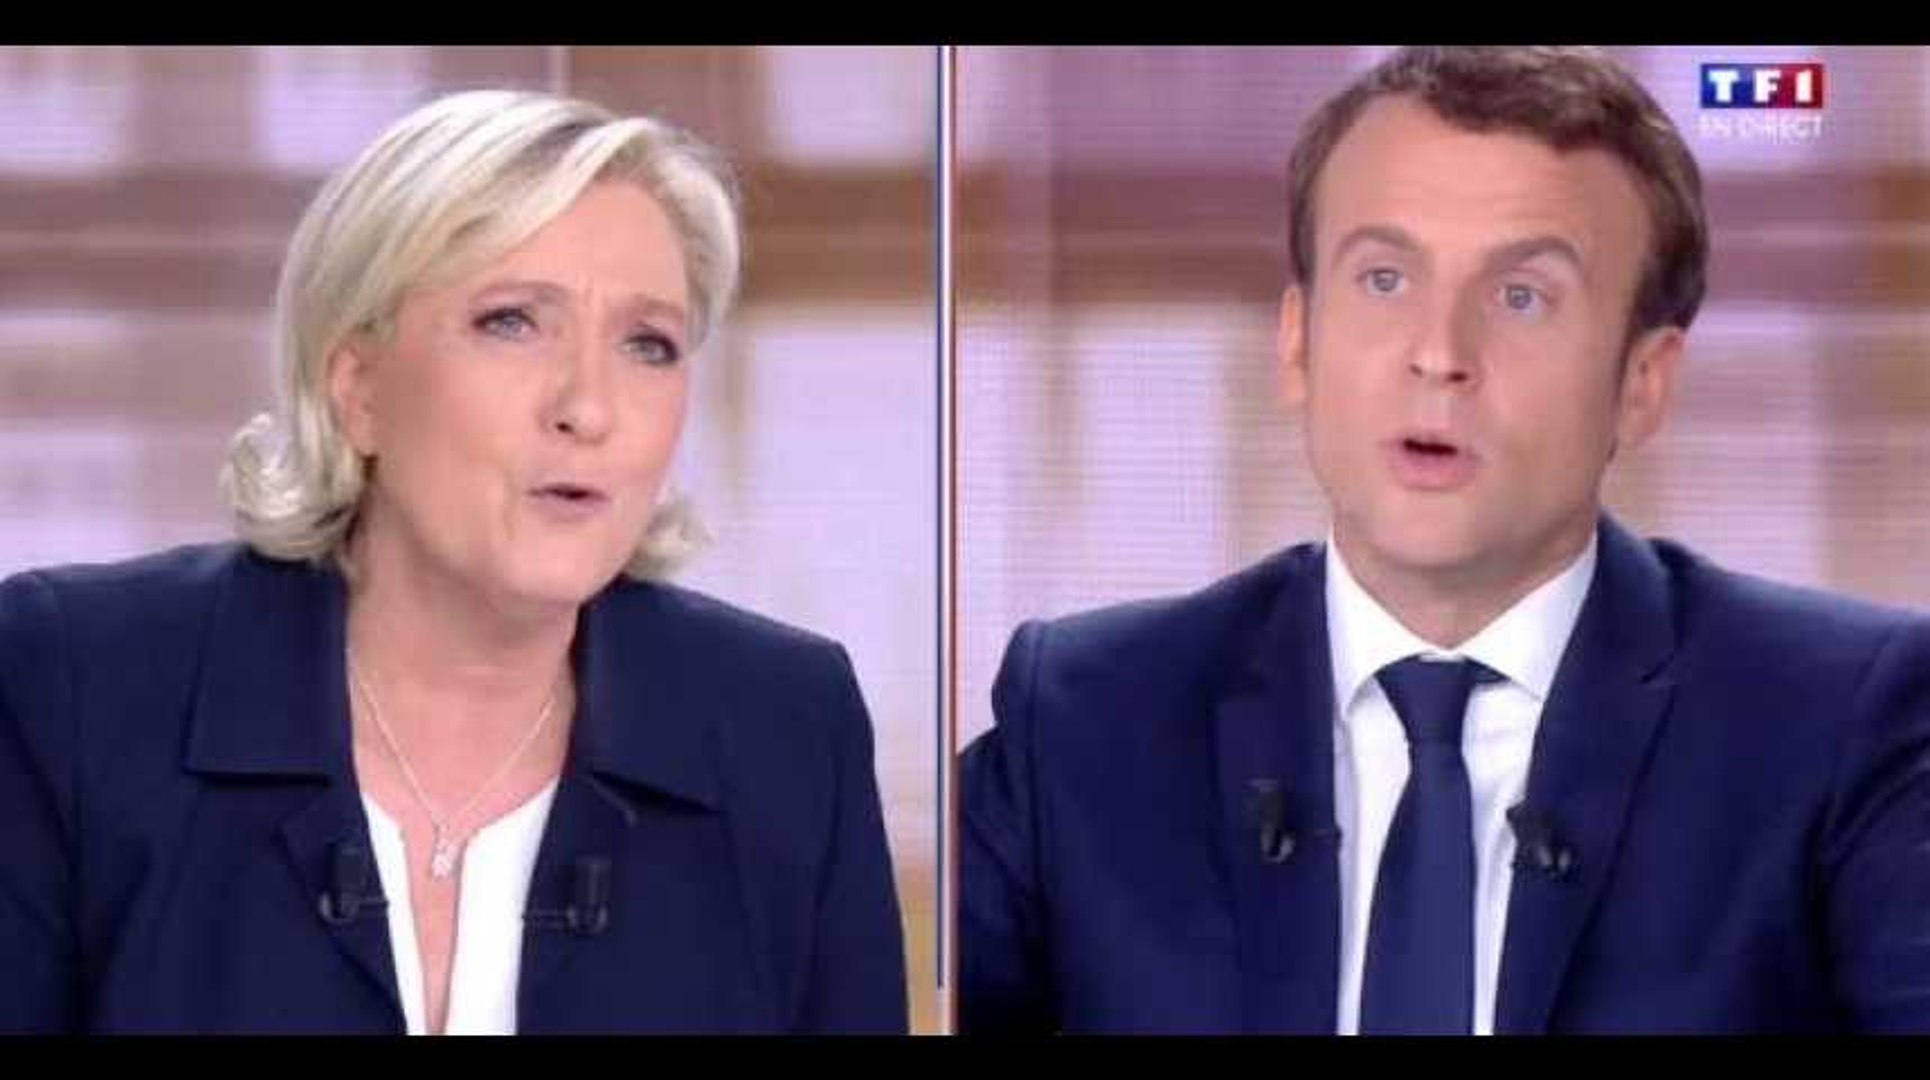 Le Débat : Emmanuel Macron revient sur le casier judiciaire de Marine Le Pen  (Vidéo) - Vidéo Dailymotion